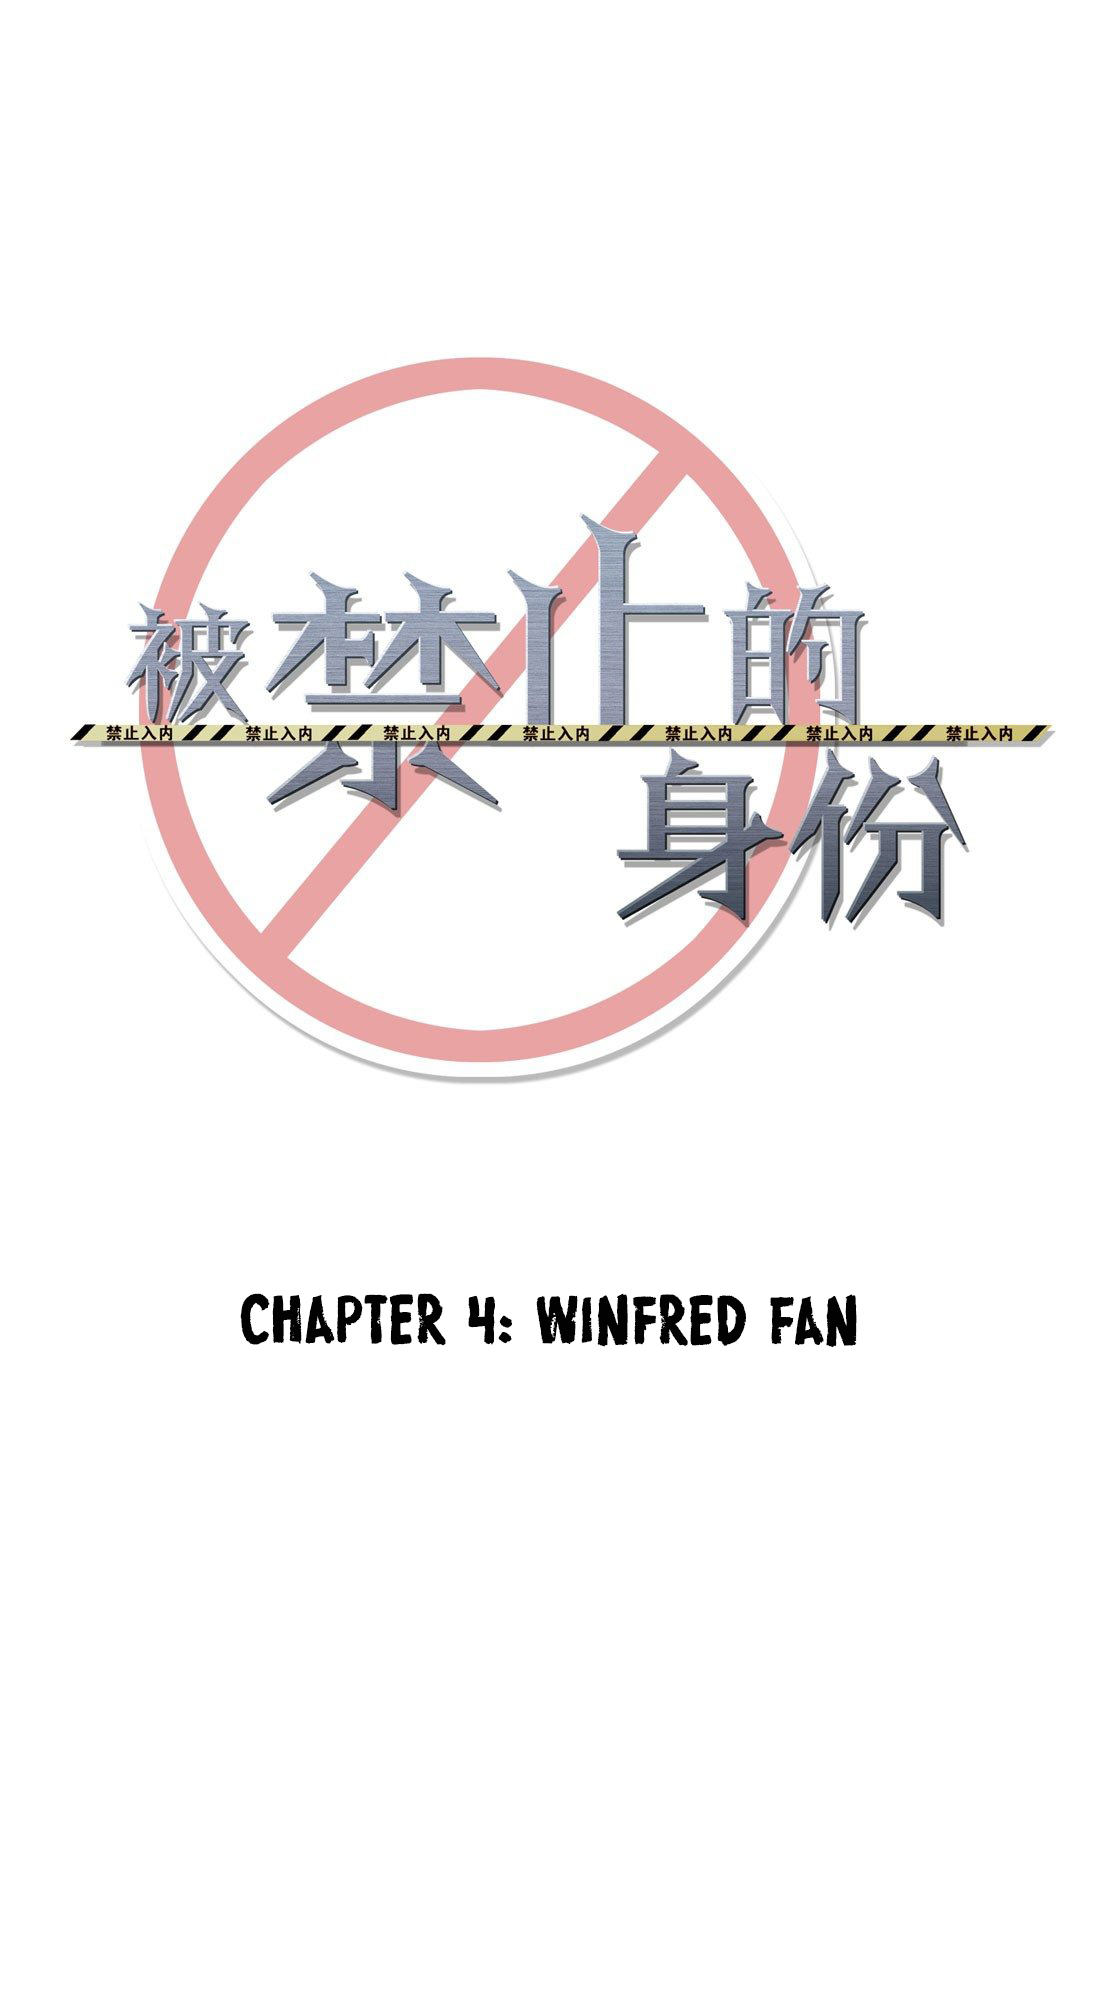 Forbidden Identity Ch. 4 Winfred Fan